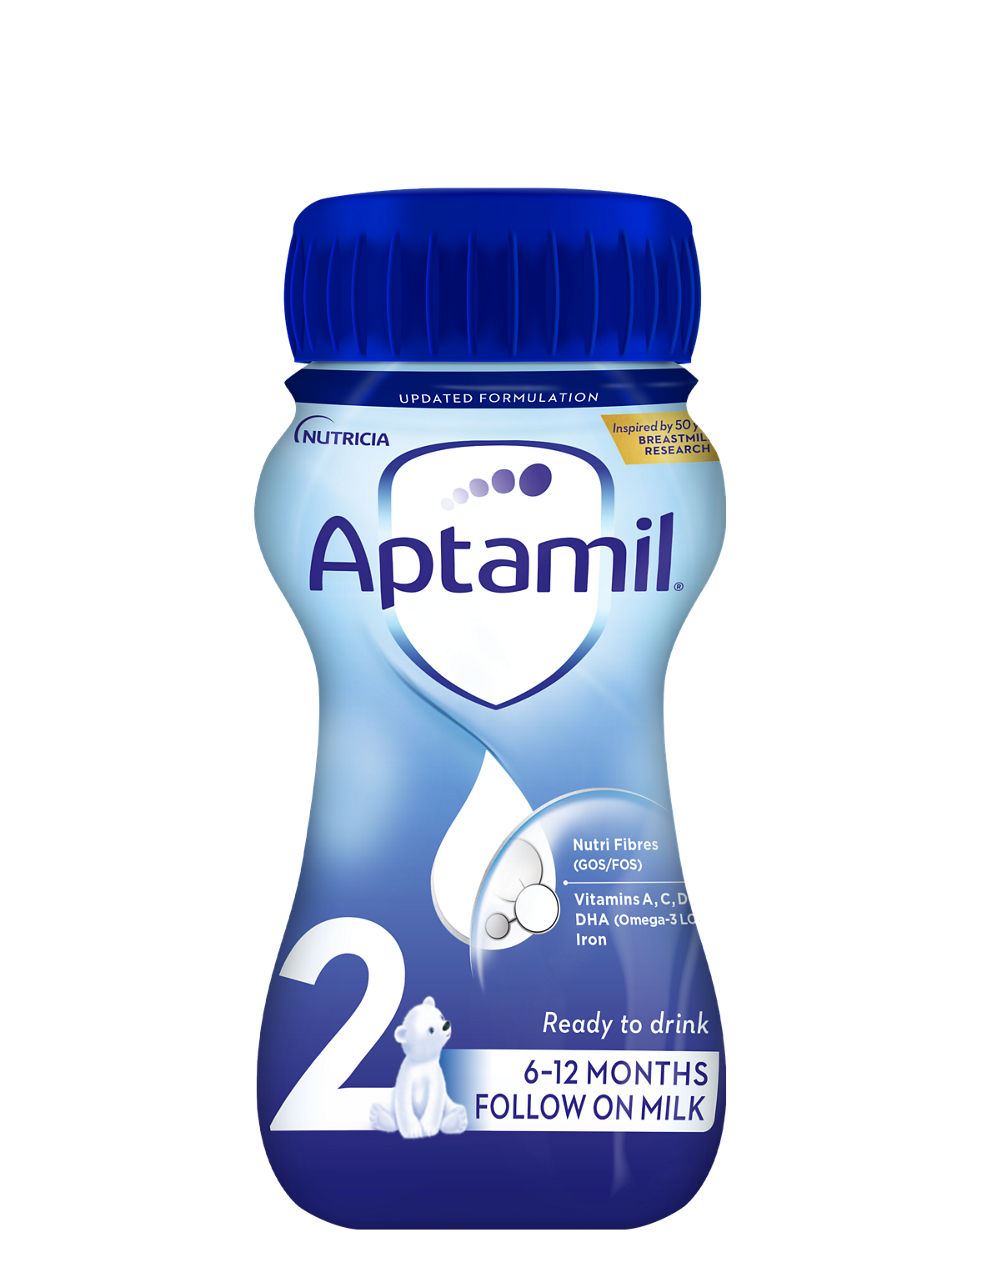 Aptamil Formula Milks, Product Range